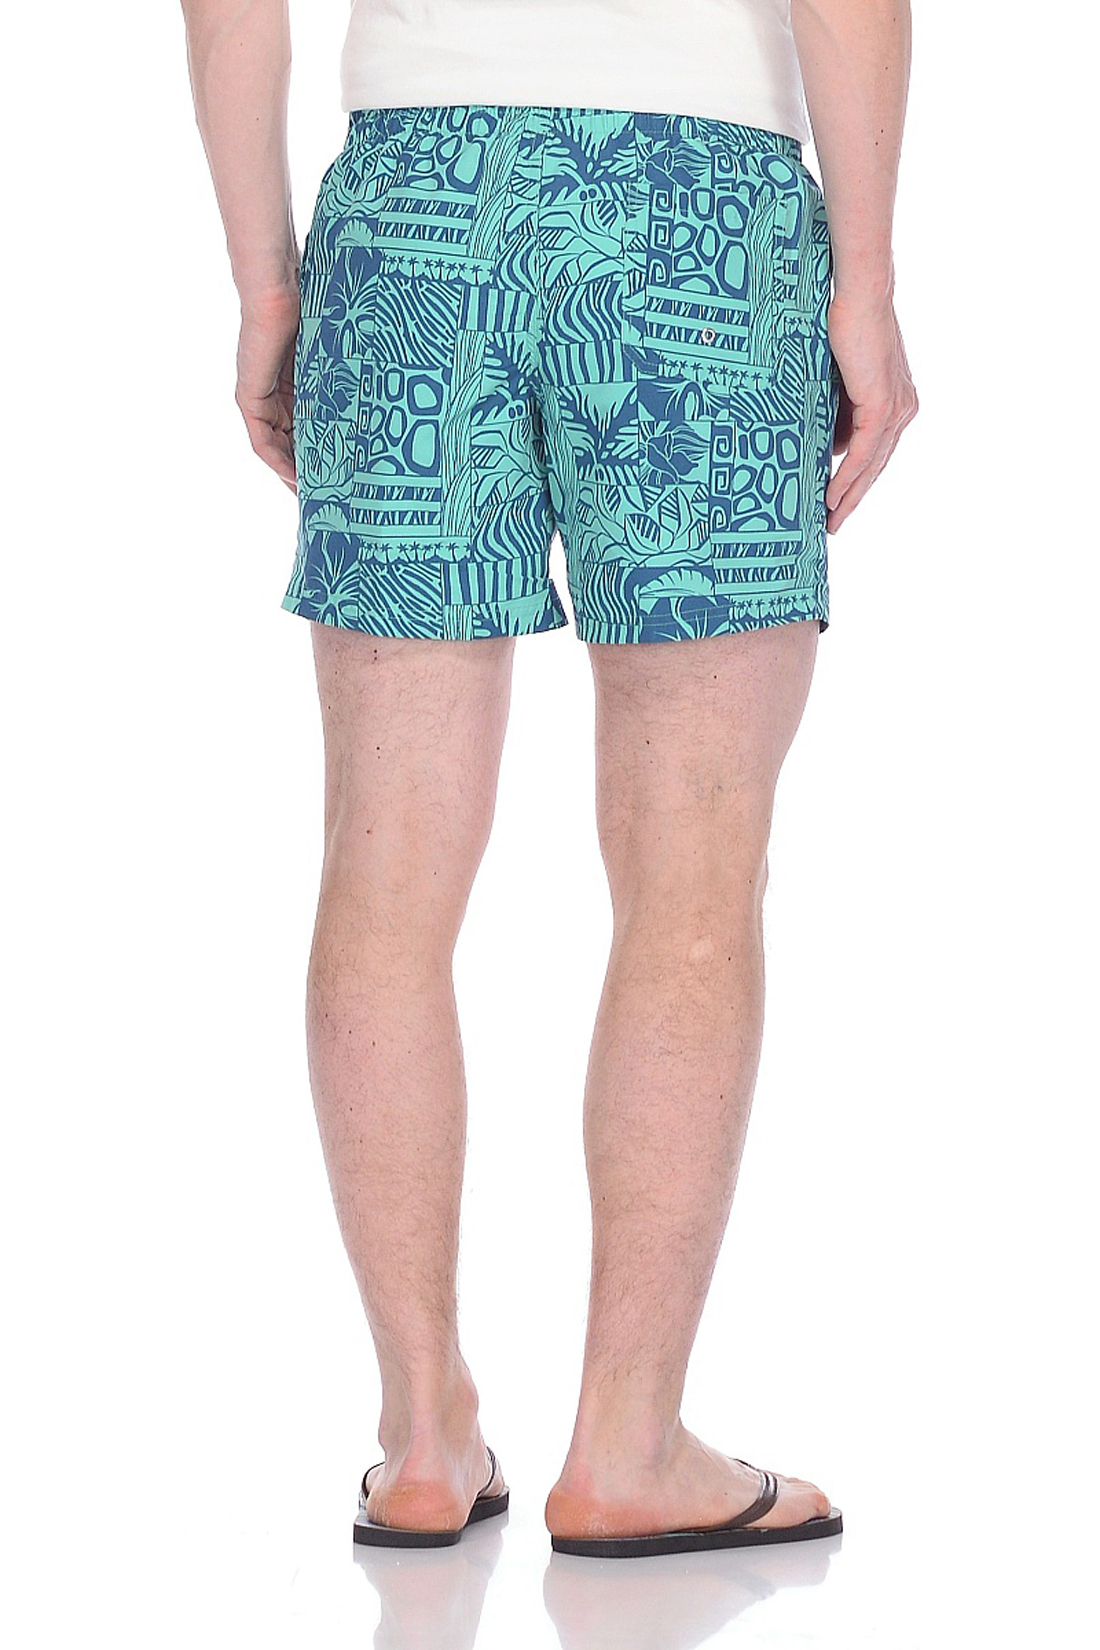 Купальные шорты в гавайском стиле (арт. baon B828022), размер L, цвет зеленый Купальные шорты в гавайском стиле (арт. baon B828022) - фото 2